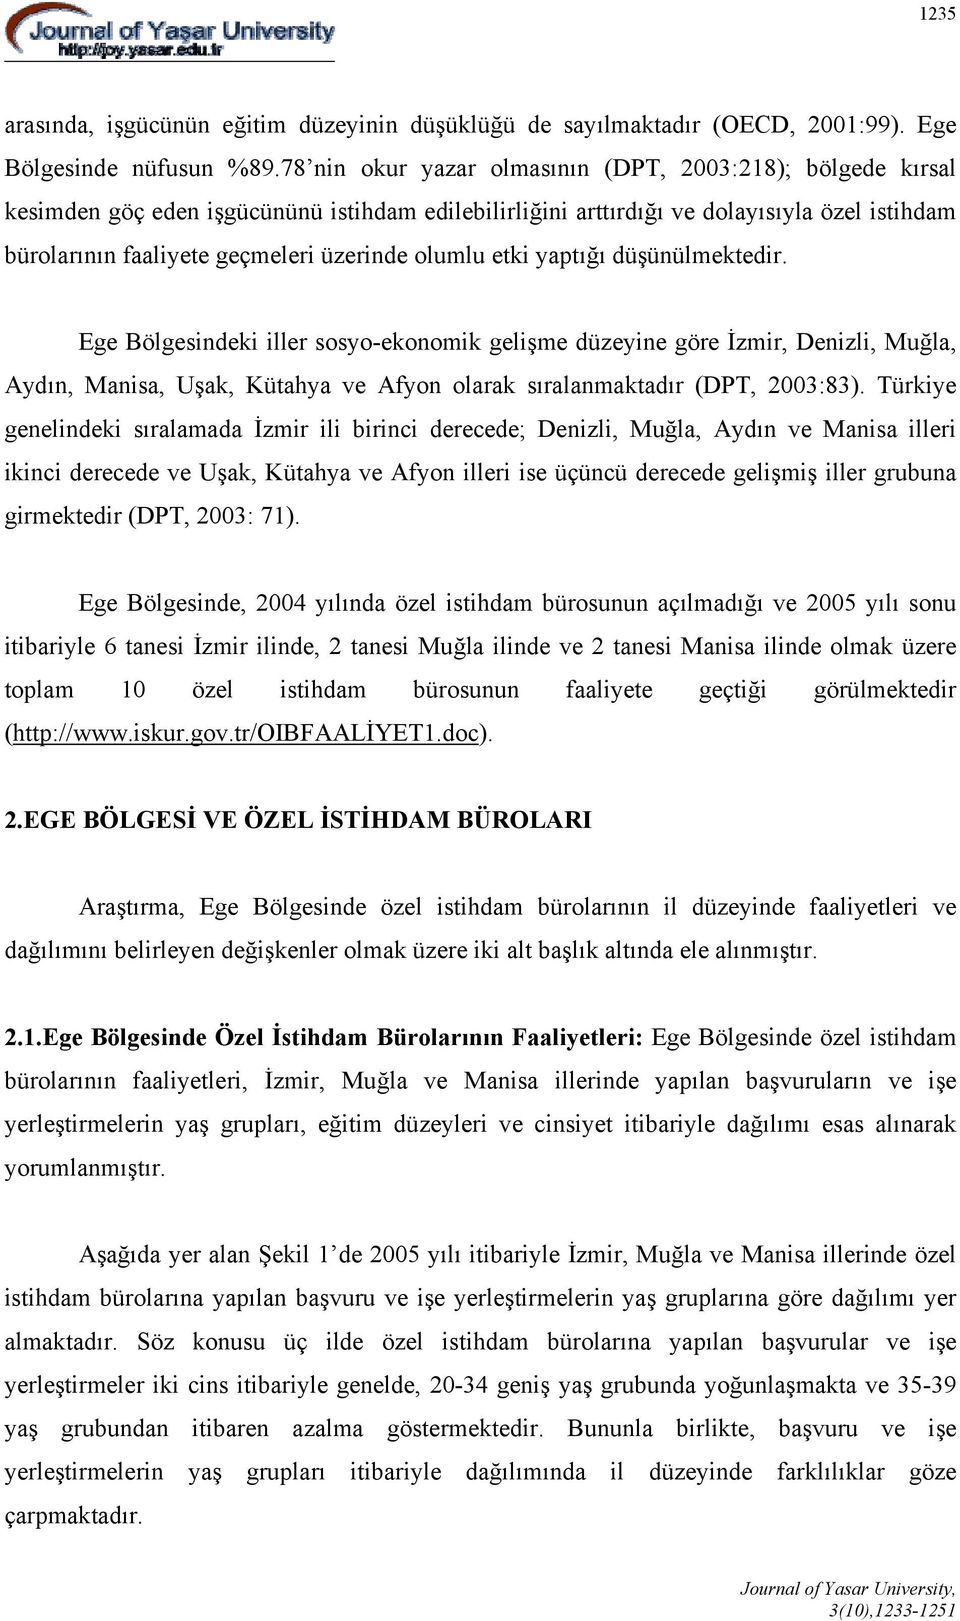 olumlu etki yaptığı düşünülmektedir. Ege Bölgesindeki iller sosyo-ekonomik gelişme düzeyine göre İzmir, Denizli, Muğla, Aydın, Manisa, Uşak, Kütahya ve Afyon olarak sıralanmaktadır (DPT, 2003:83).